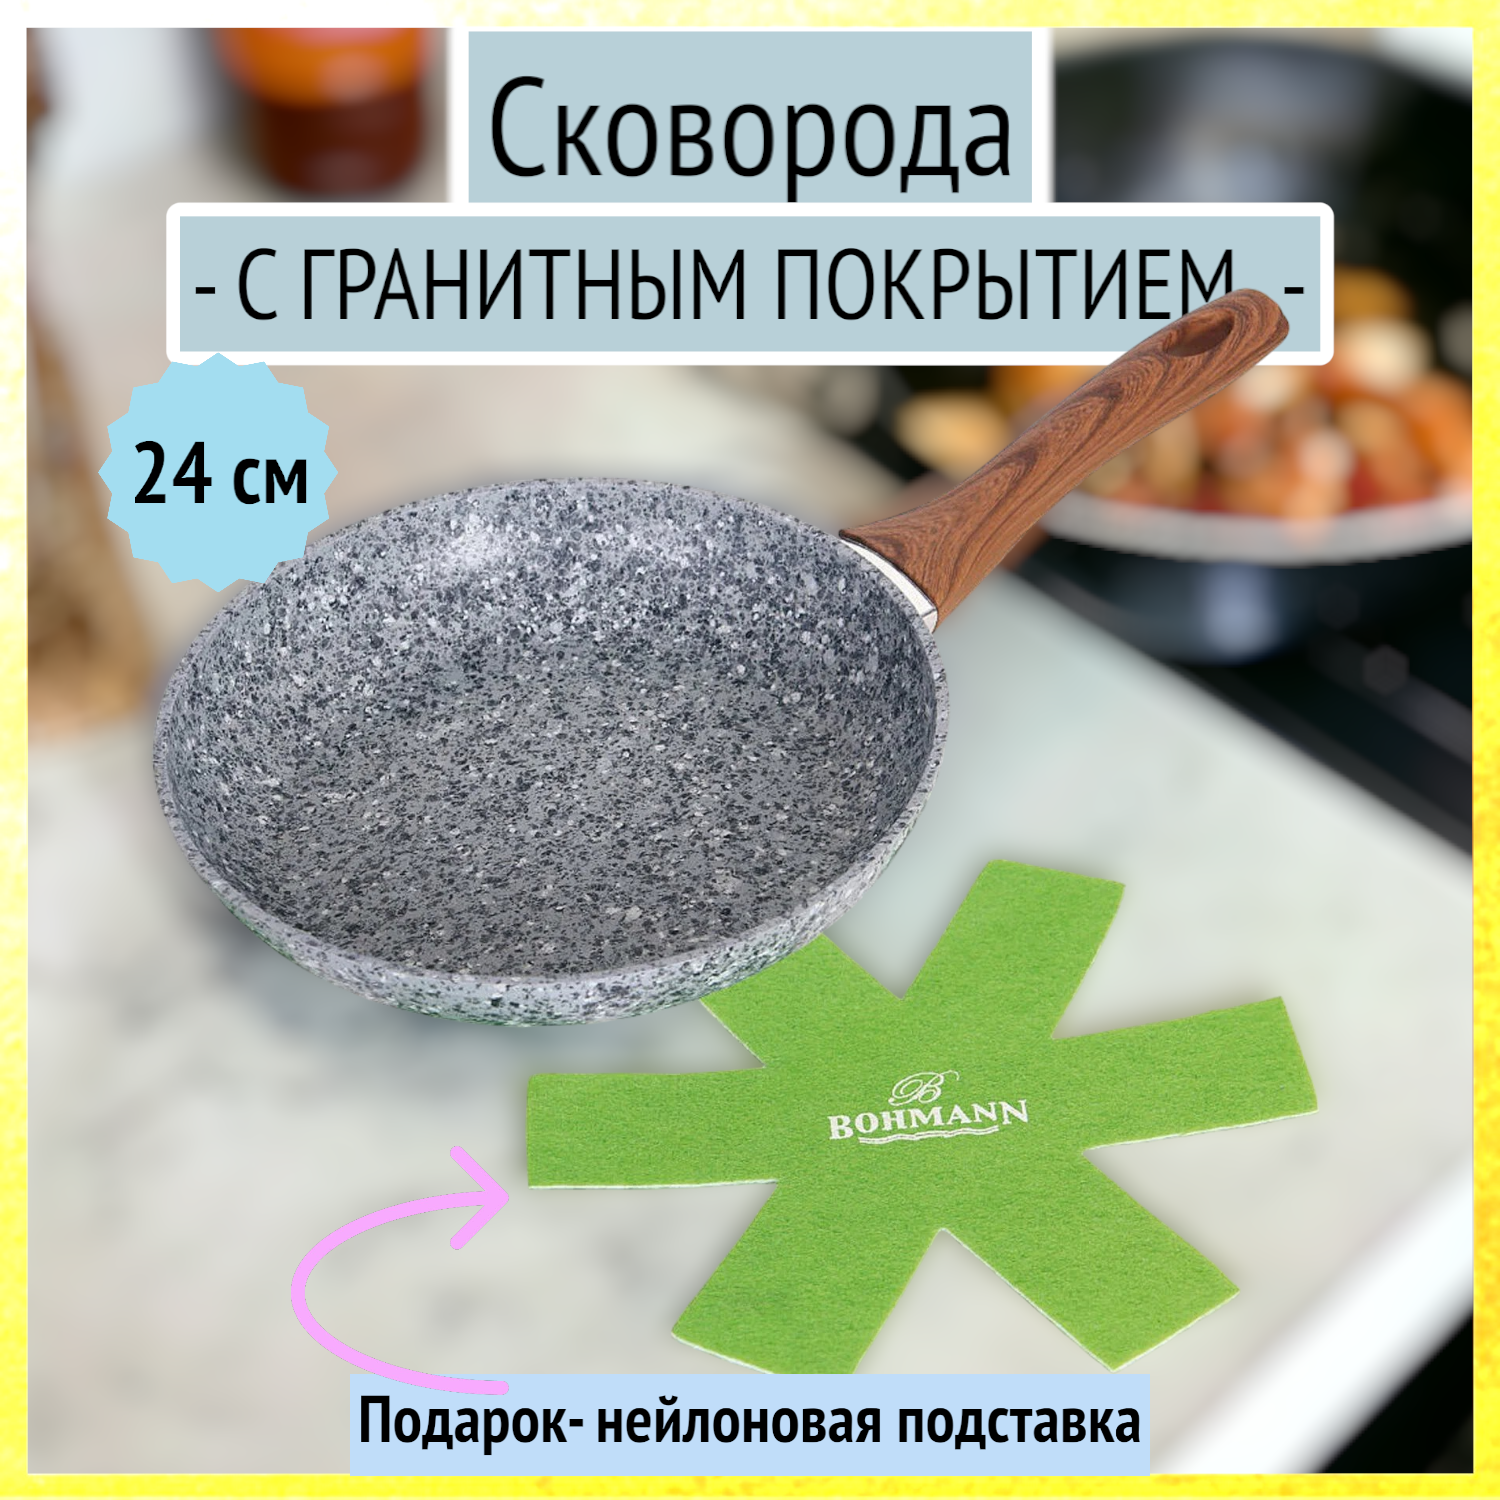 Сковорода алюминиевая с гранитным покрытием, 24 см, Bohmann, BH 1015-24GRN